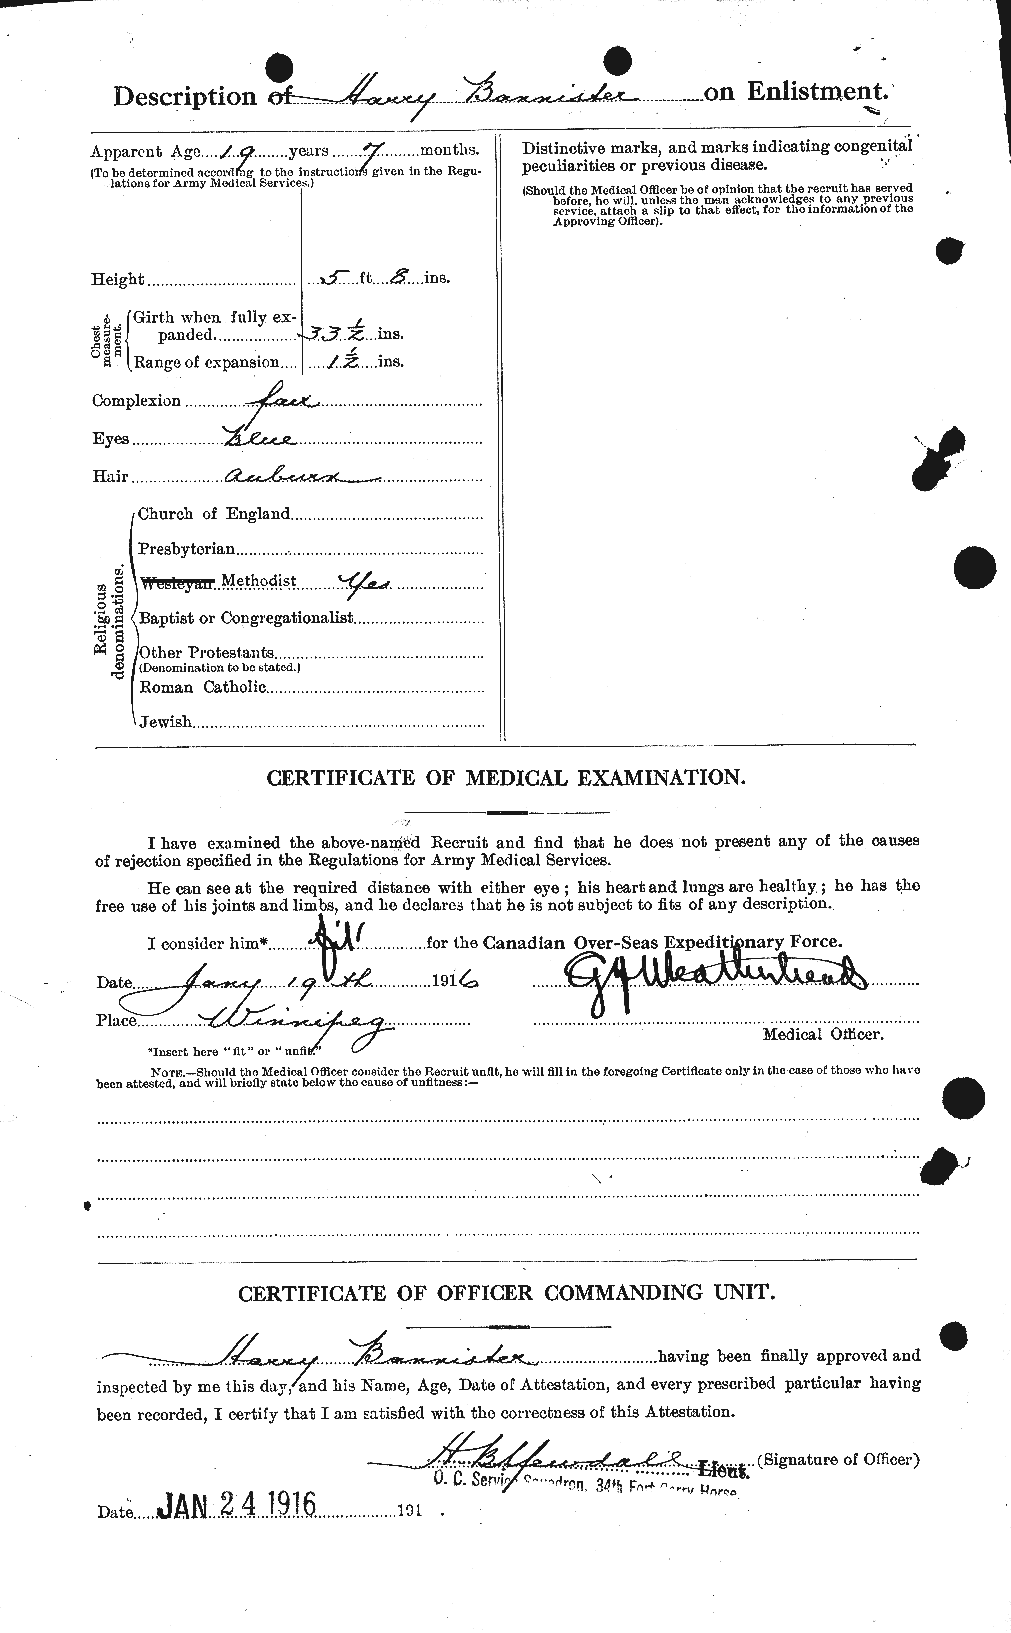 Dossiers du Personnel de la Première Guerre mondiale - CEC 224789b